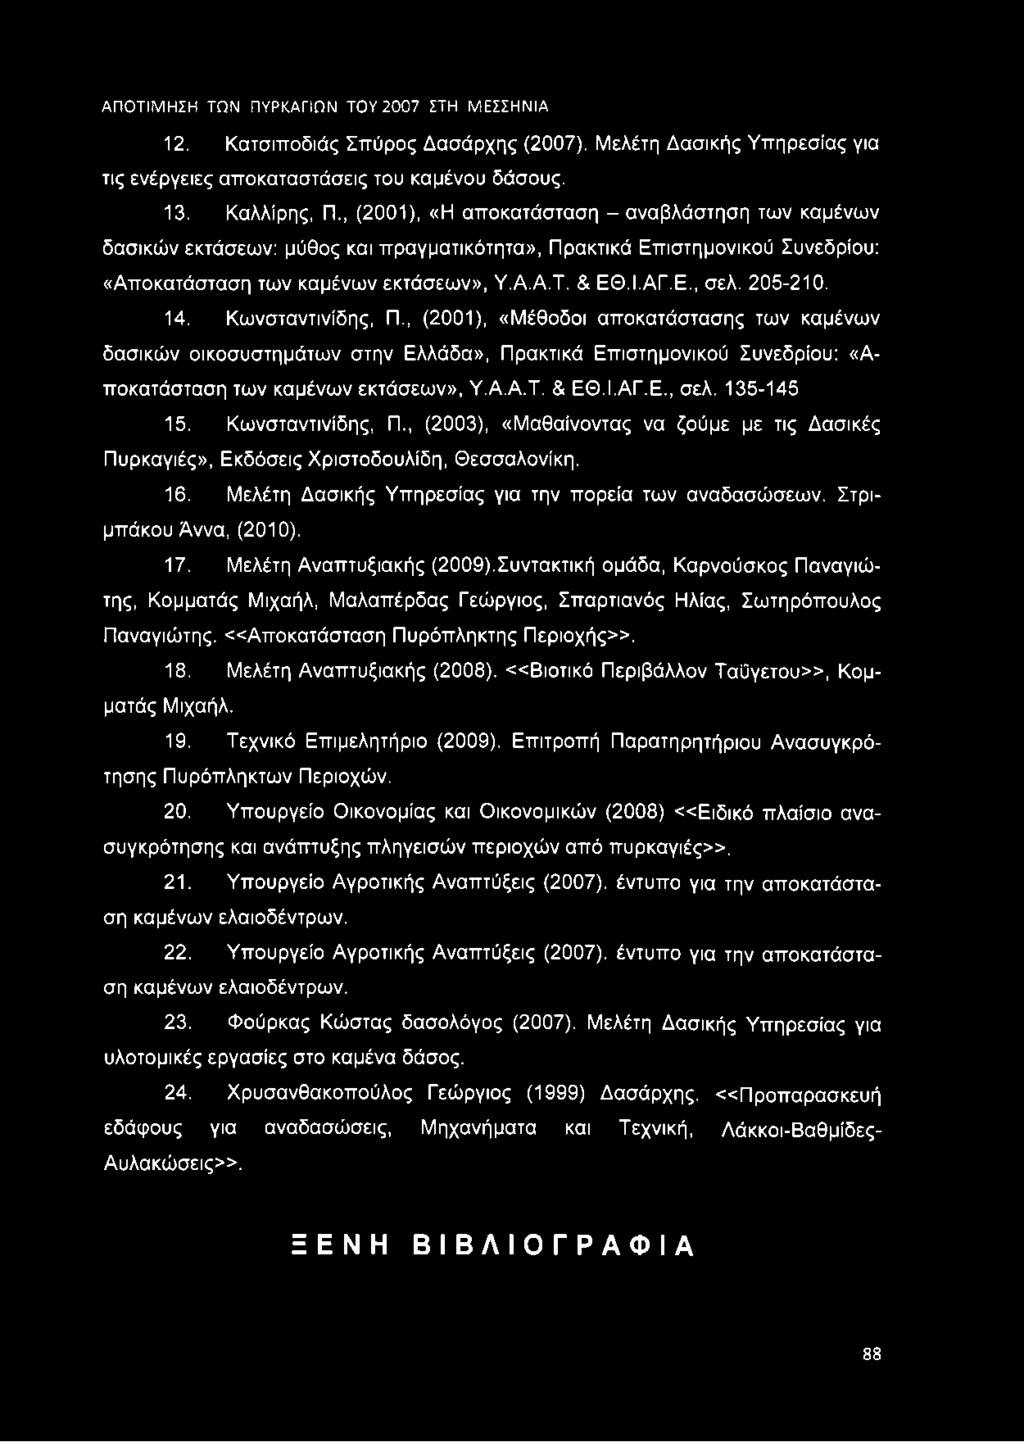 205-210. 14. Κωνσταντινίδης, Π., (2001), «Μέθοδοι αποκατάστασης των καμένων δασικών οικοσυστημάτων στην Ελλάδα», Πρακτικά Επιστημονικού Συνεδρίου: «Αποκατάσταση των καμένων εκτάσεων», Υ.Α.Α.Τ. & ΕΘ.Ι.